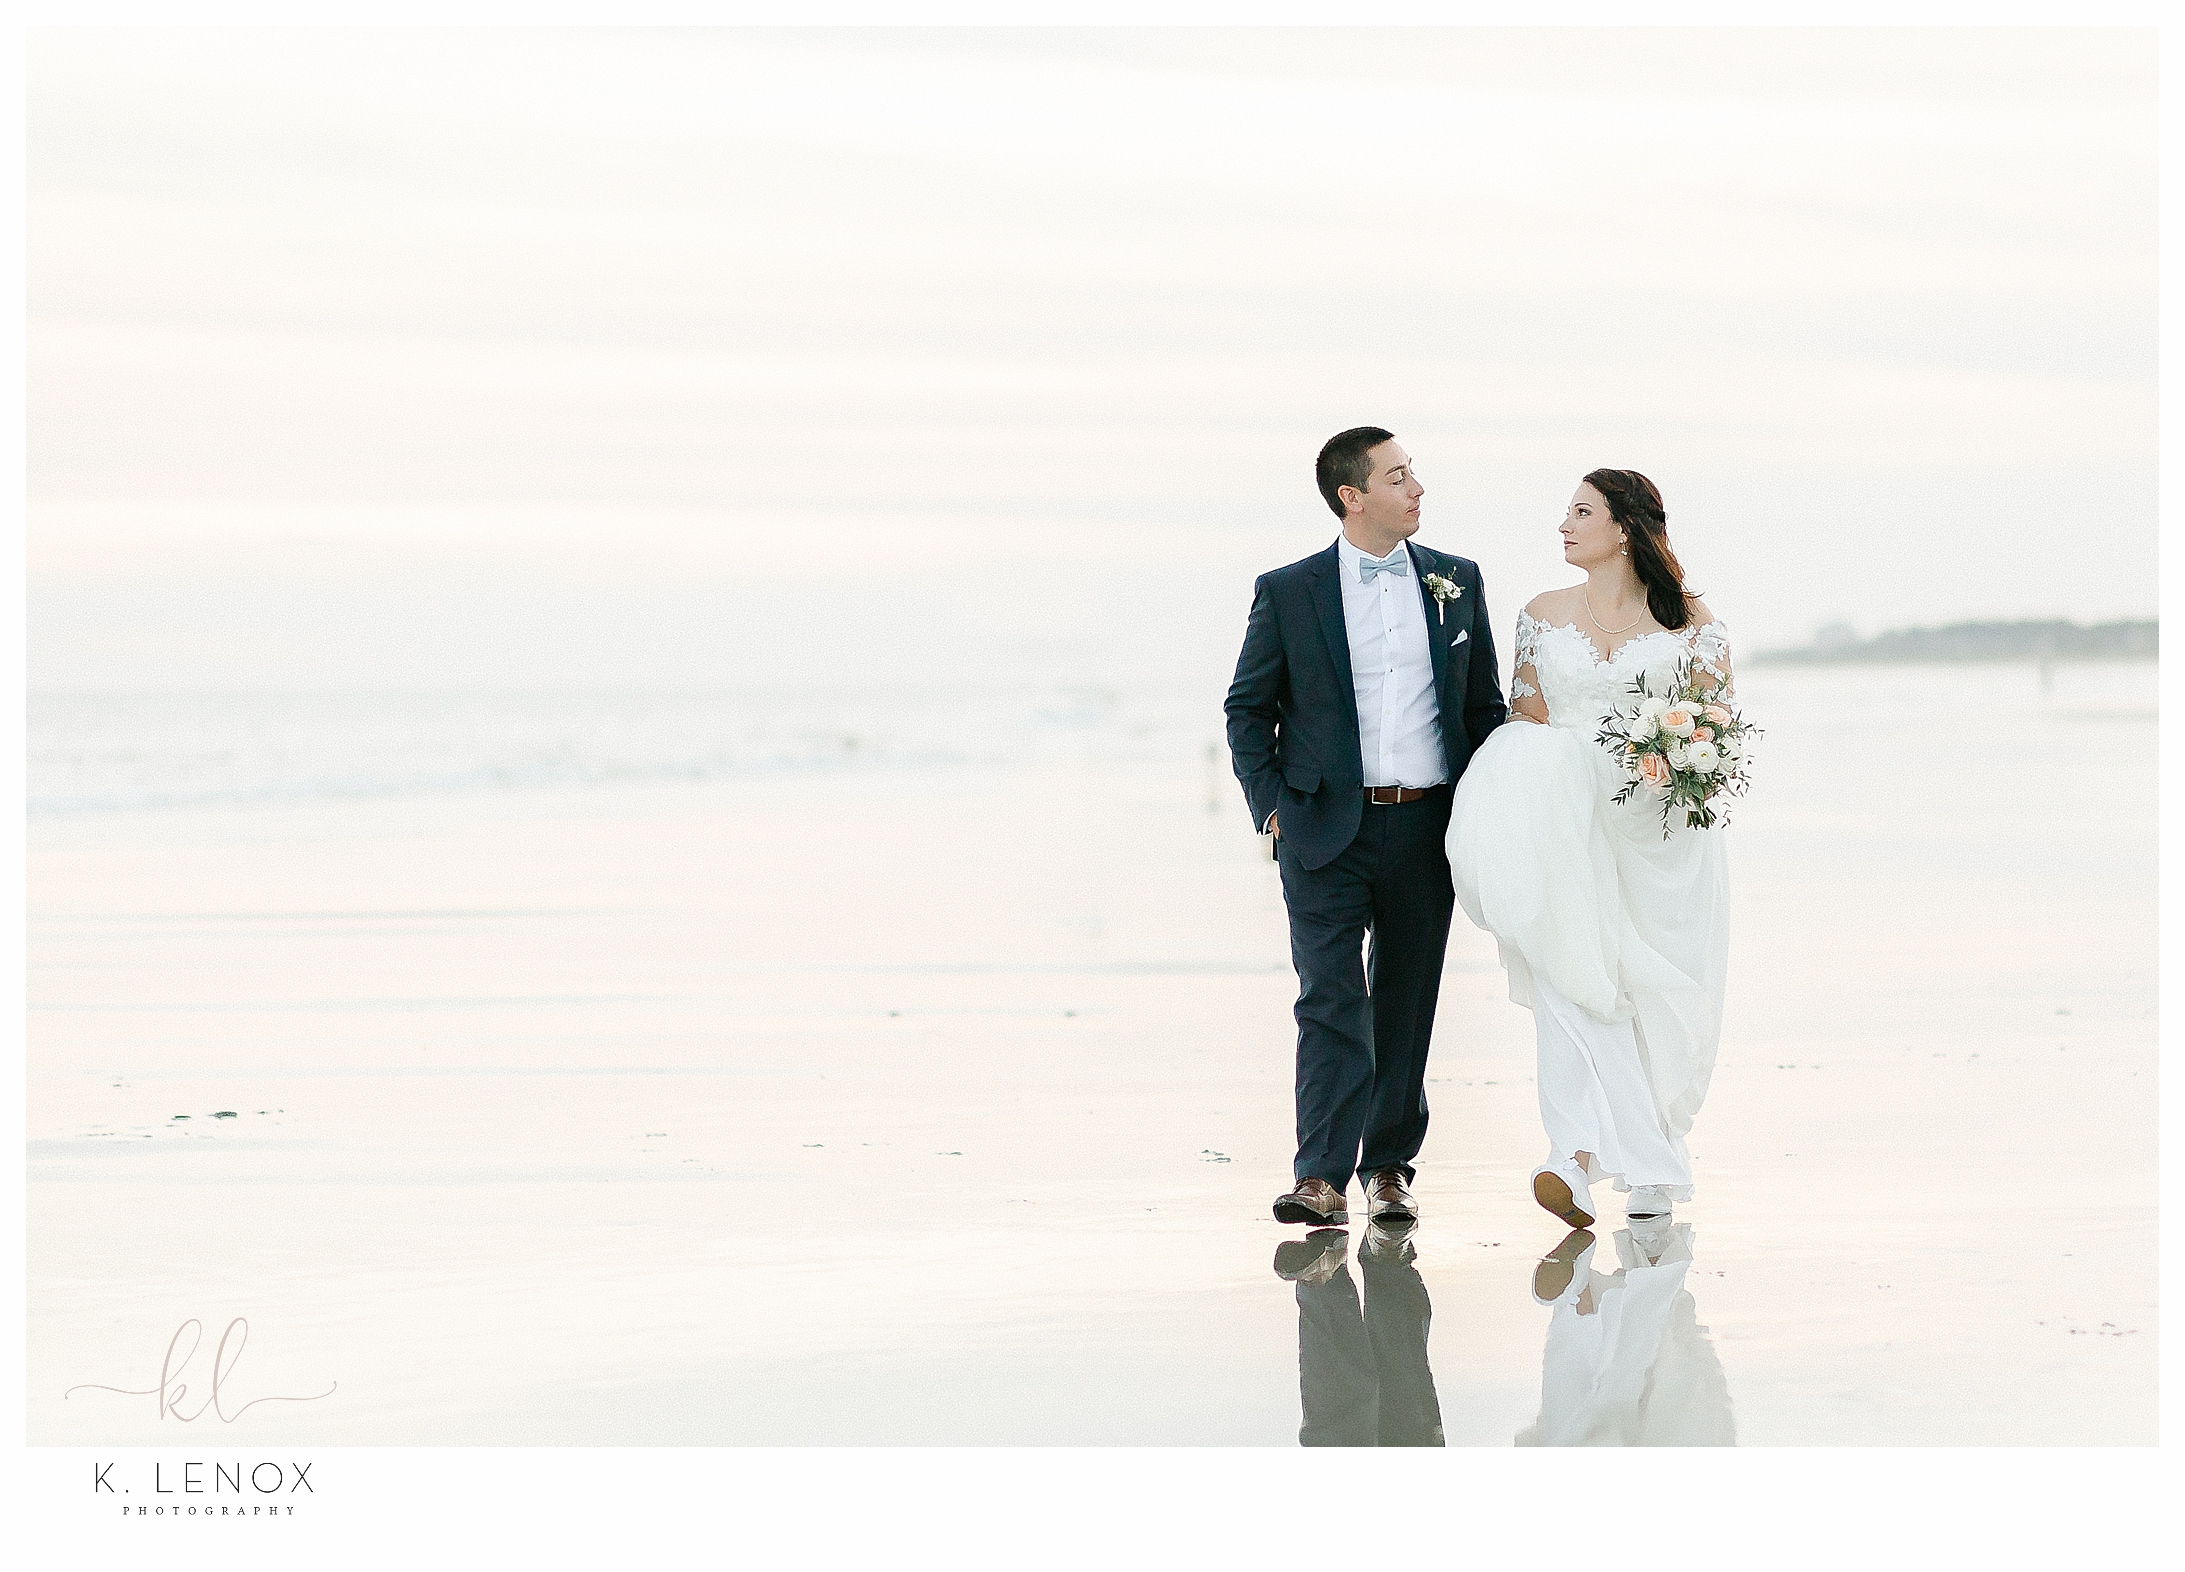 Hilton Head Wedding- Bride and Groom walking on a beach